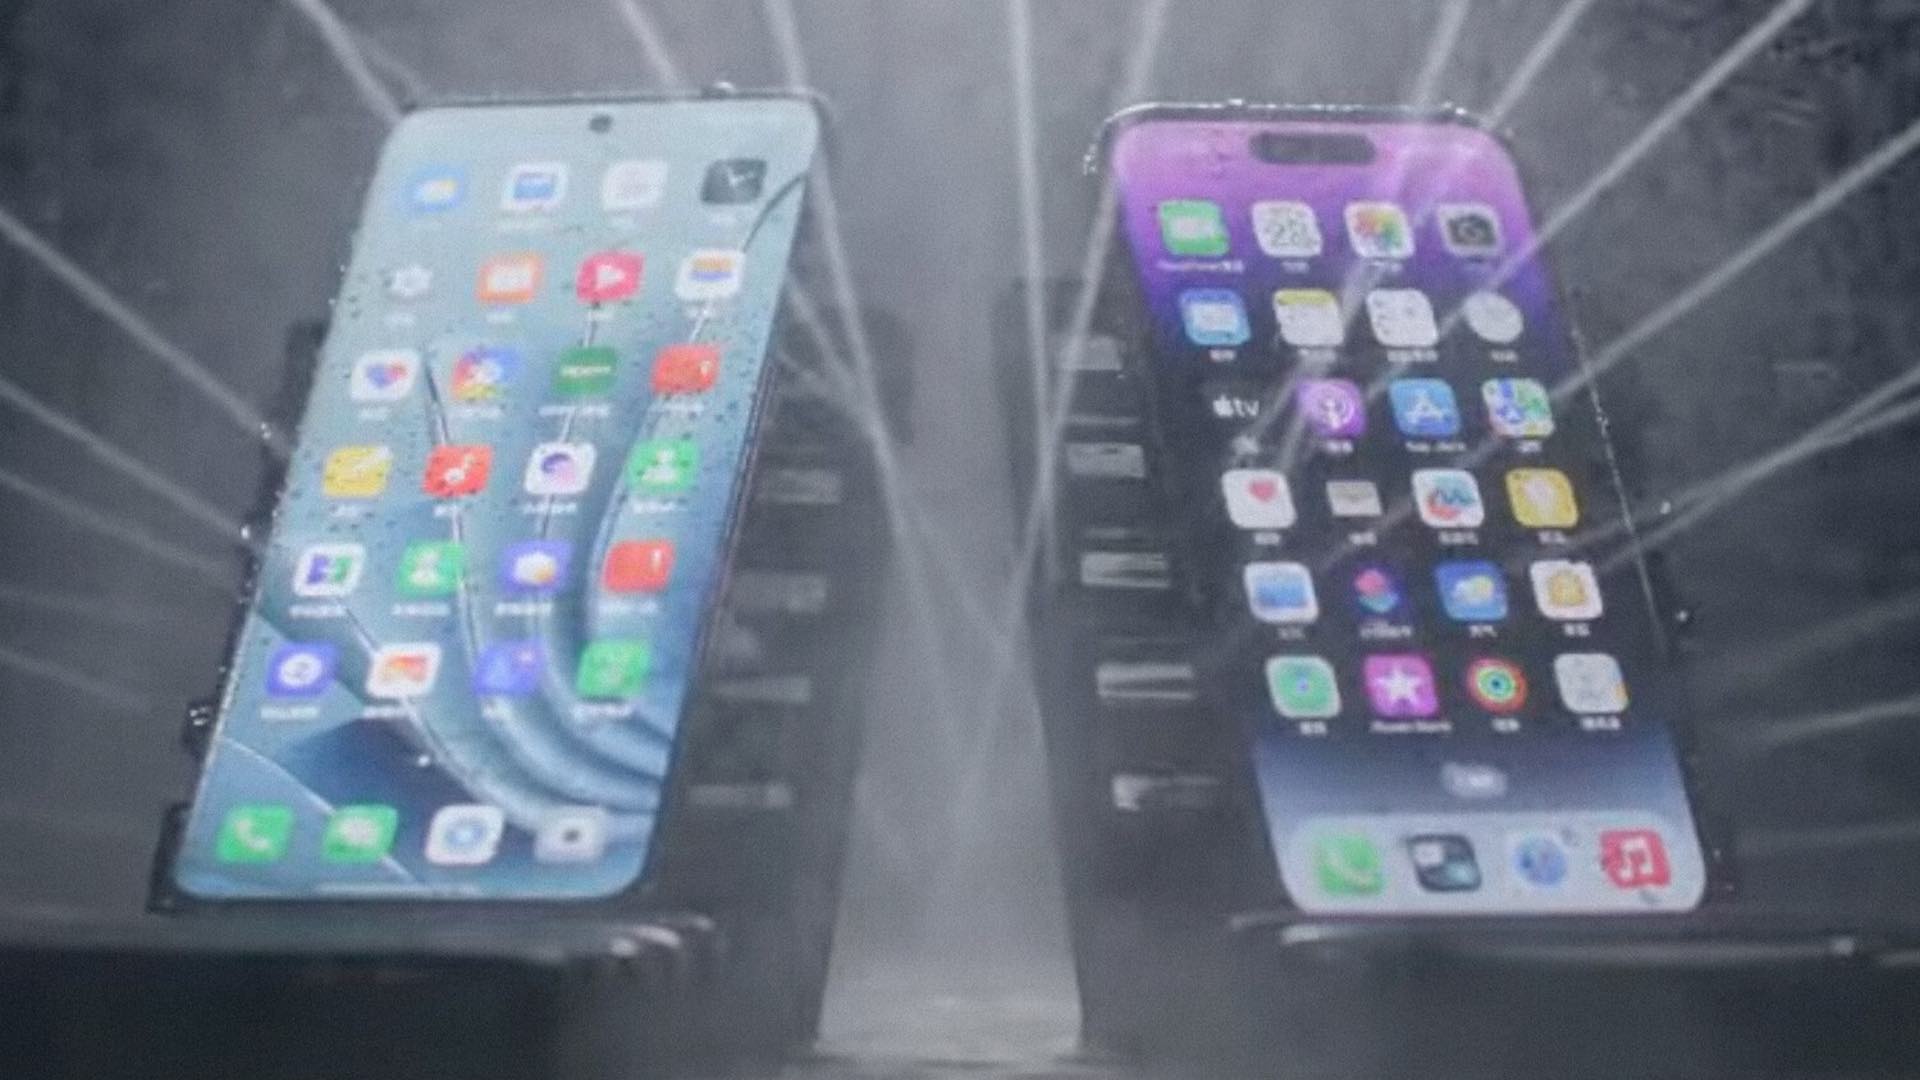 OnePlus a dévoilé un écran tactile pour smartphone qui peut fonctionner même sous la pluie